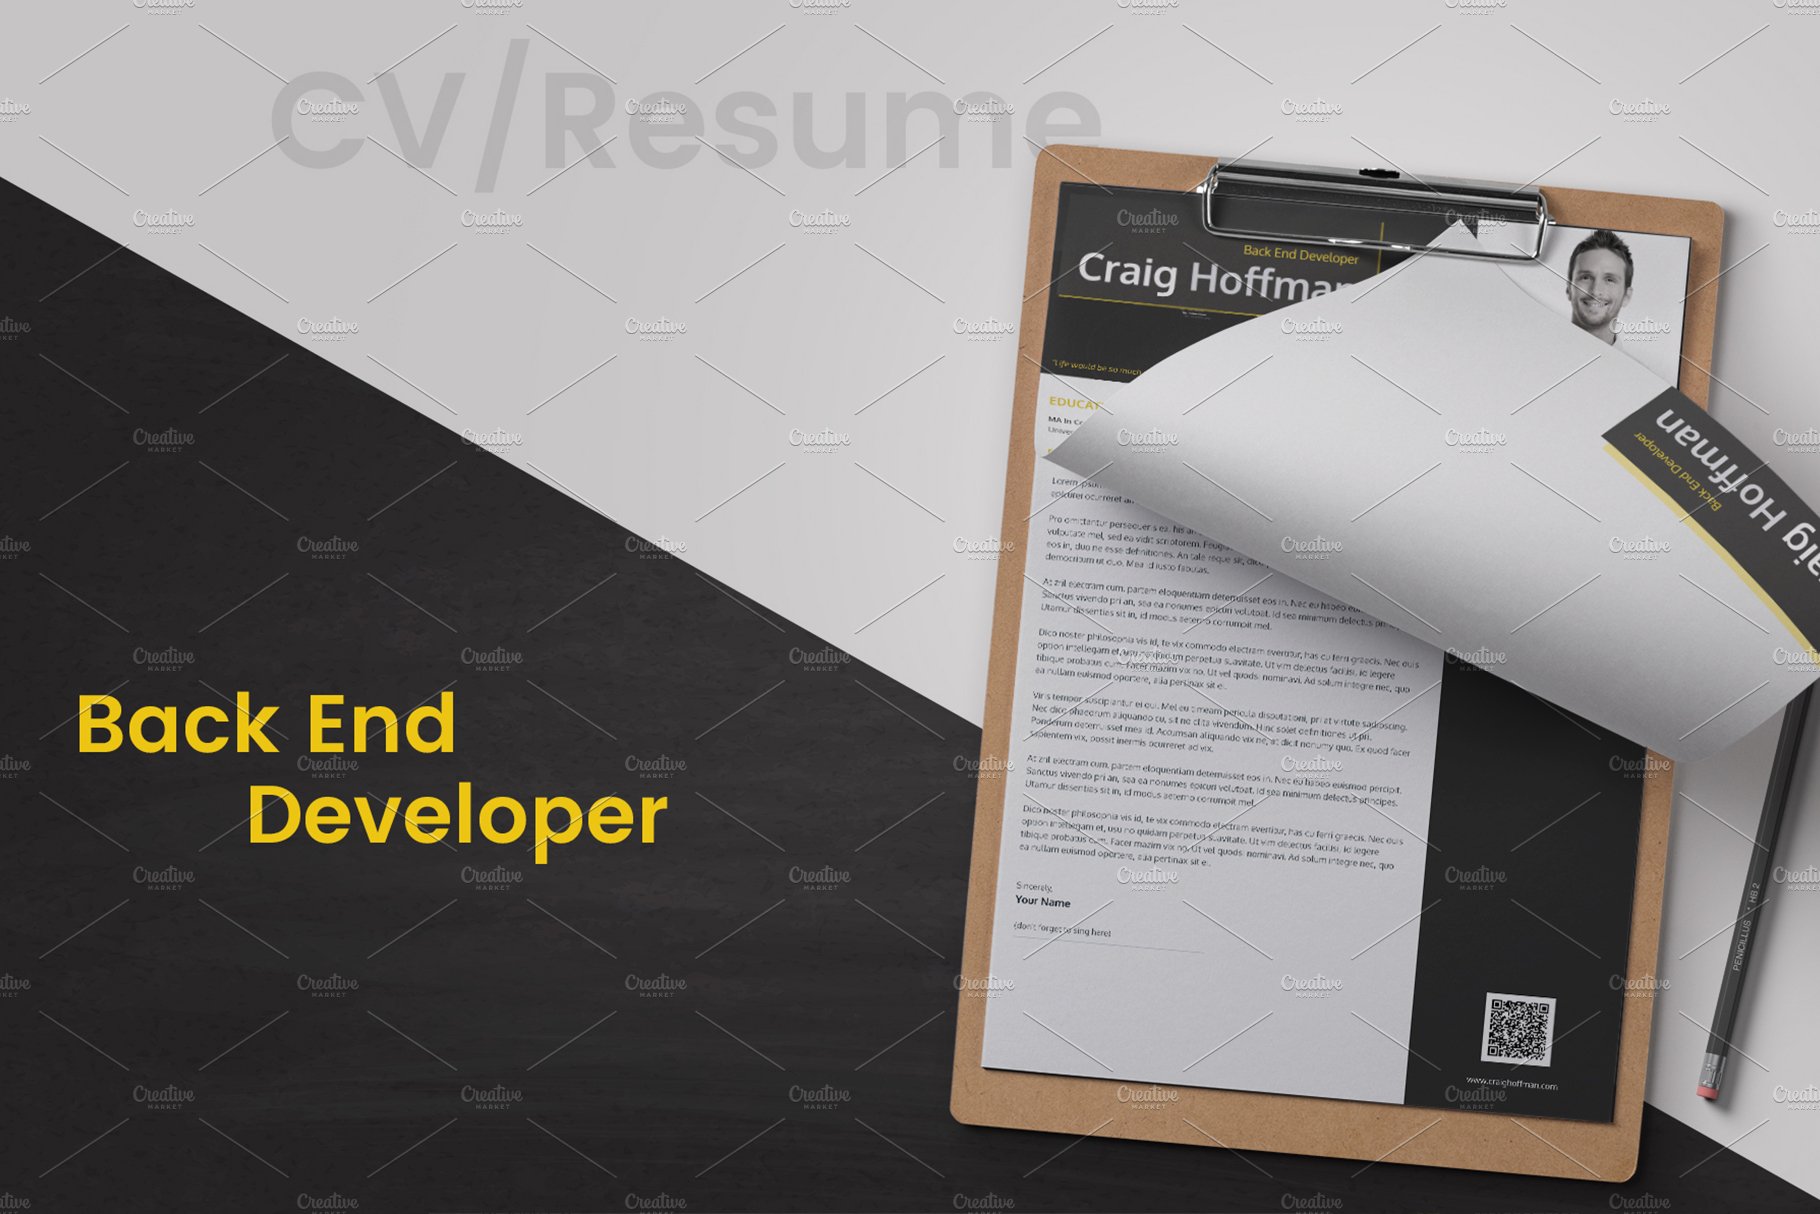 Back End Developer Resume preview image.